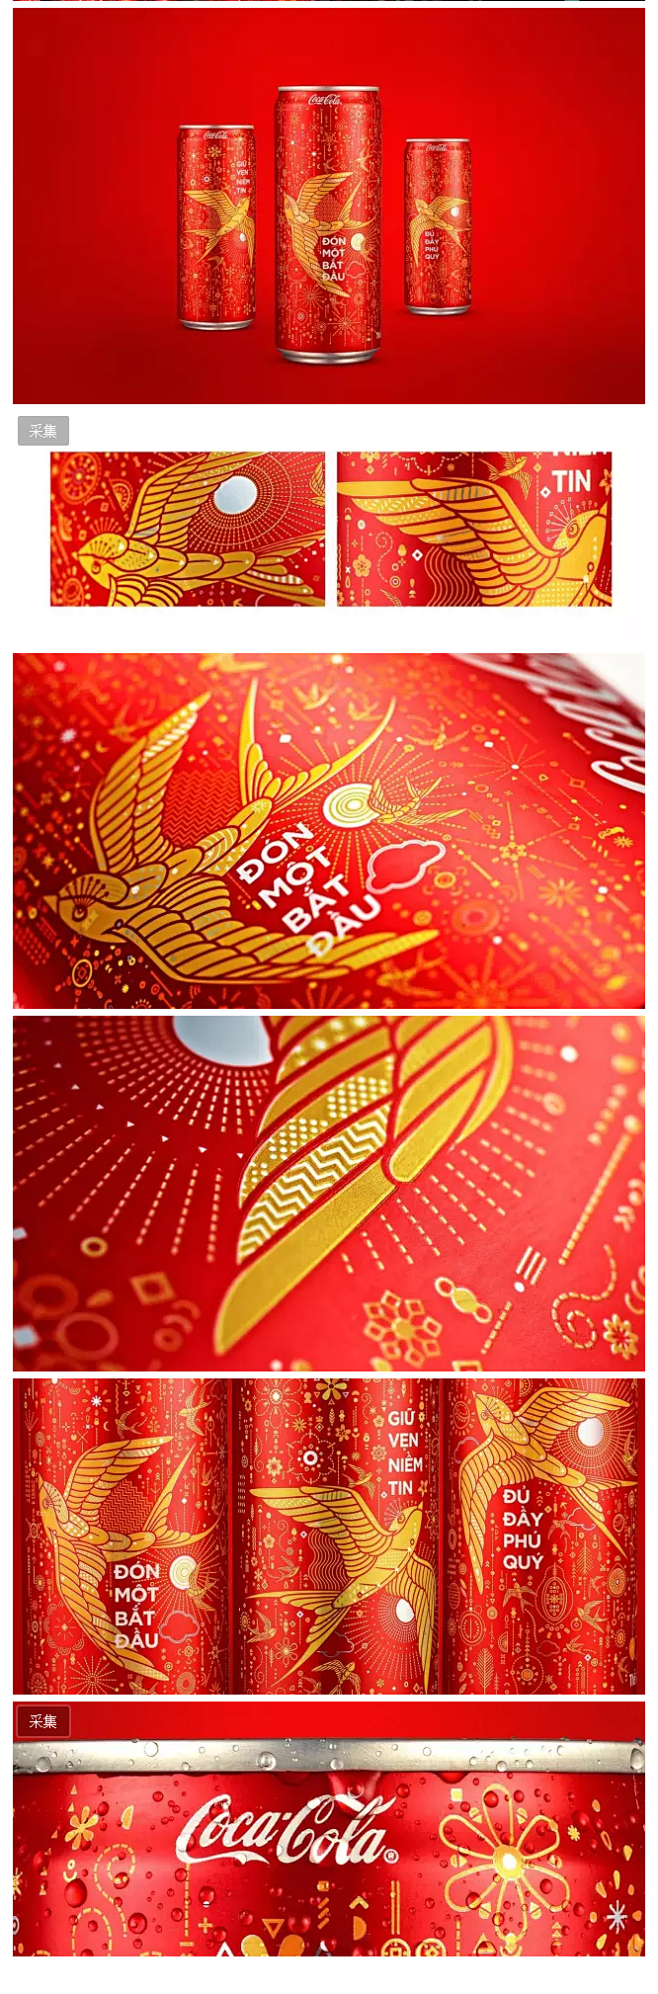 令人惊艳的可口可乐2017春节限量版包装